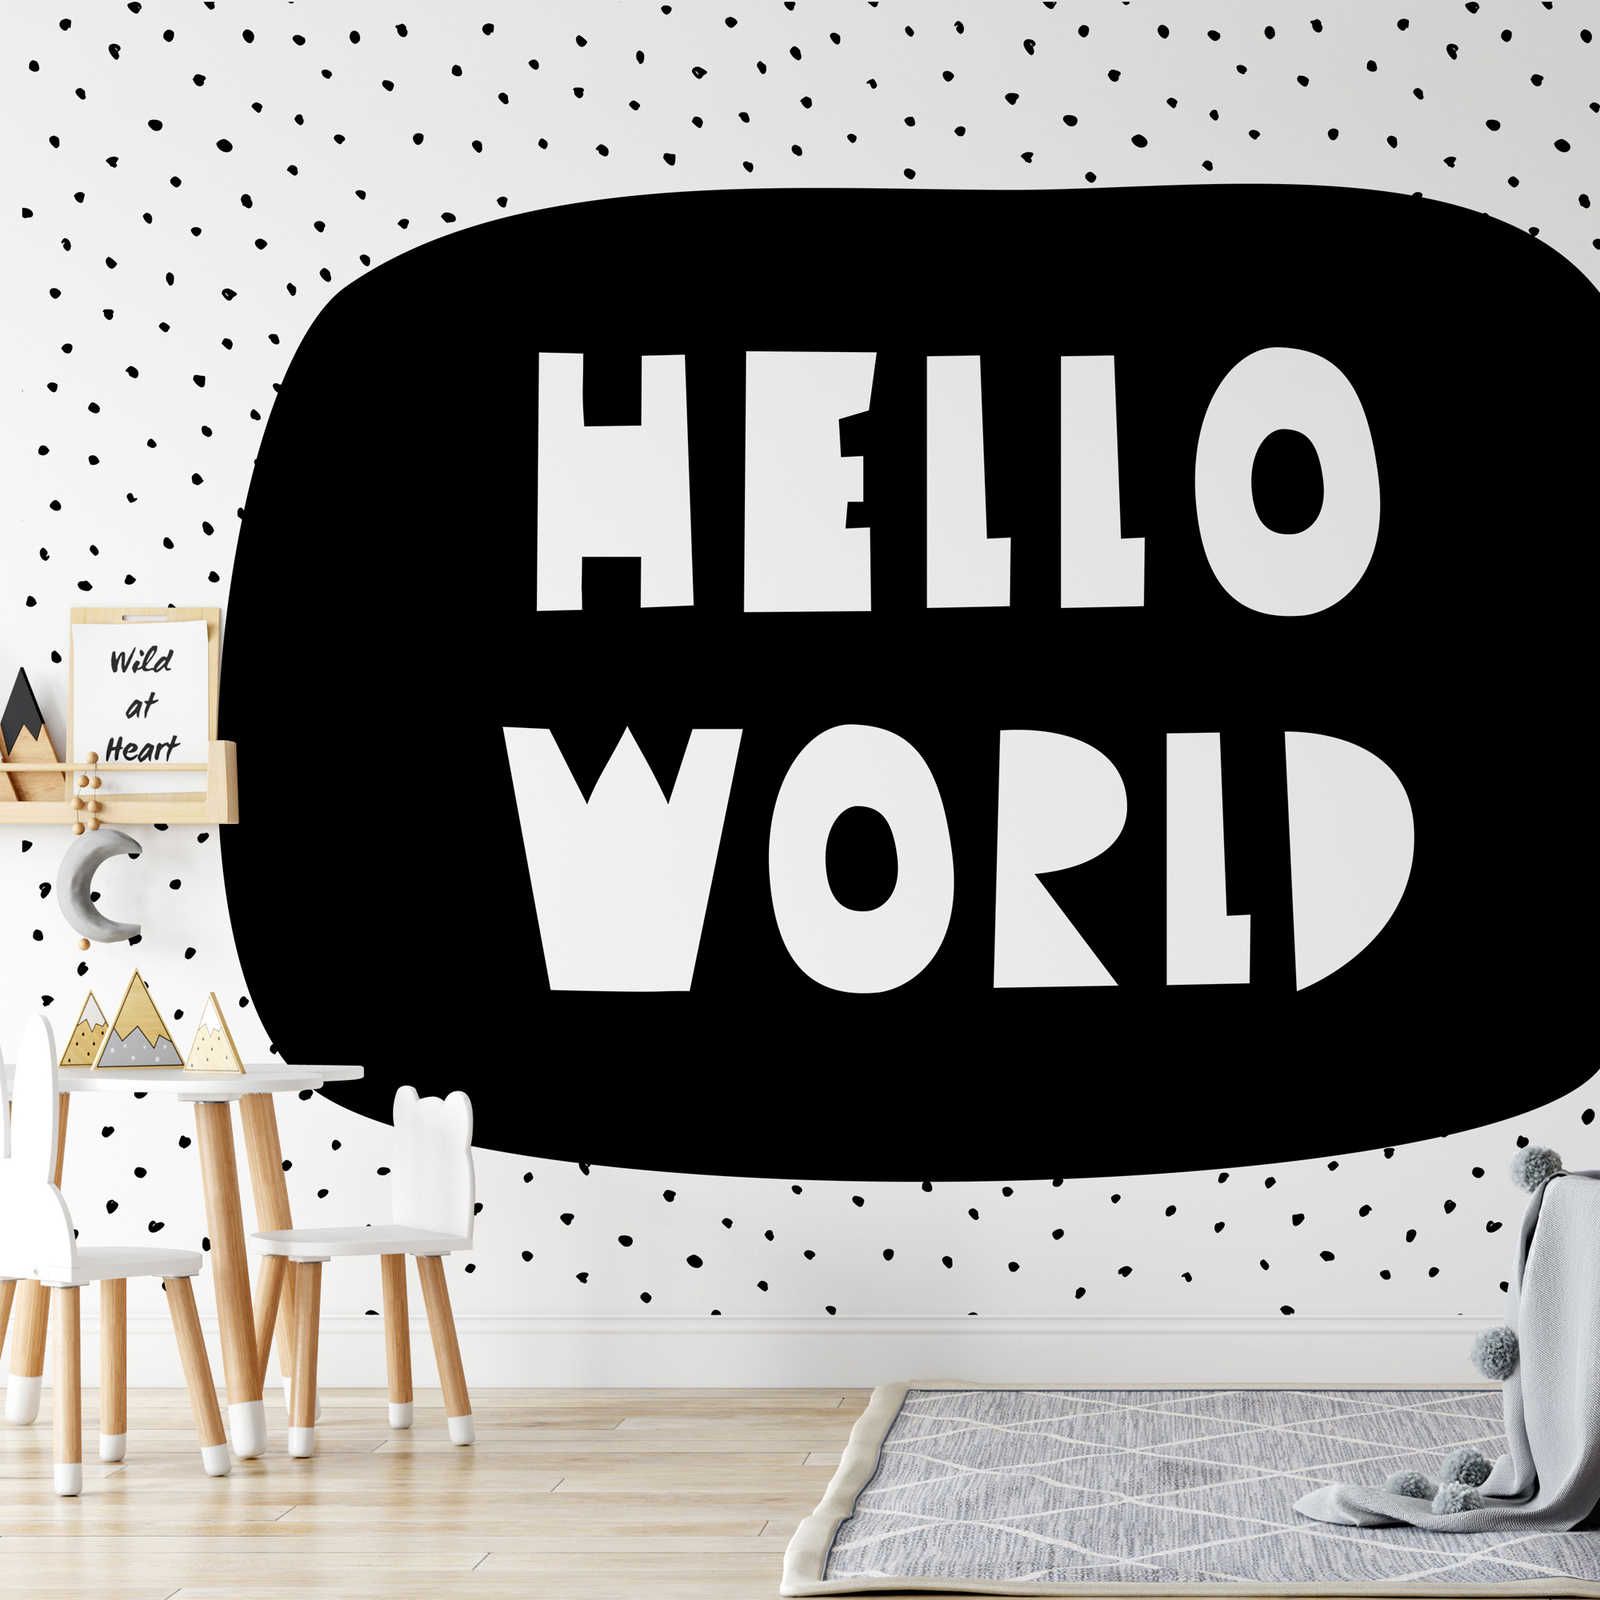 Digital behang voor kinderkamer met opschrift "Hello World" - Glad & parelmoervlies
